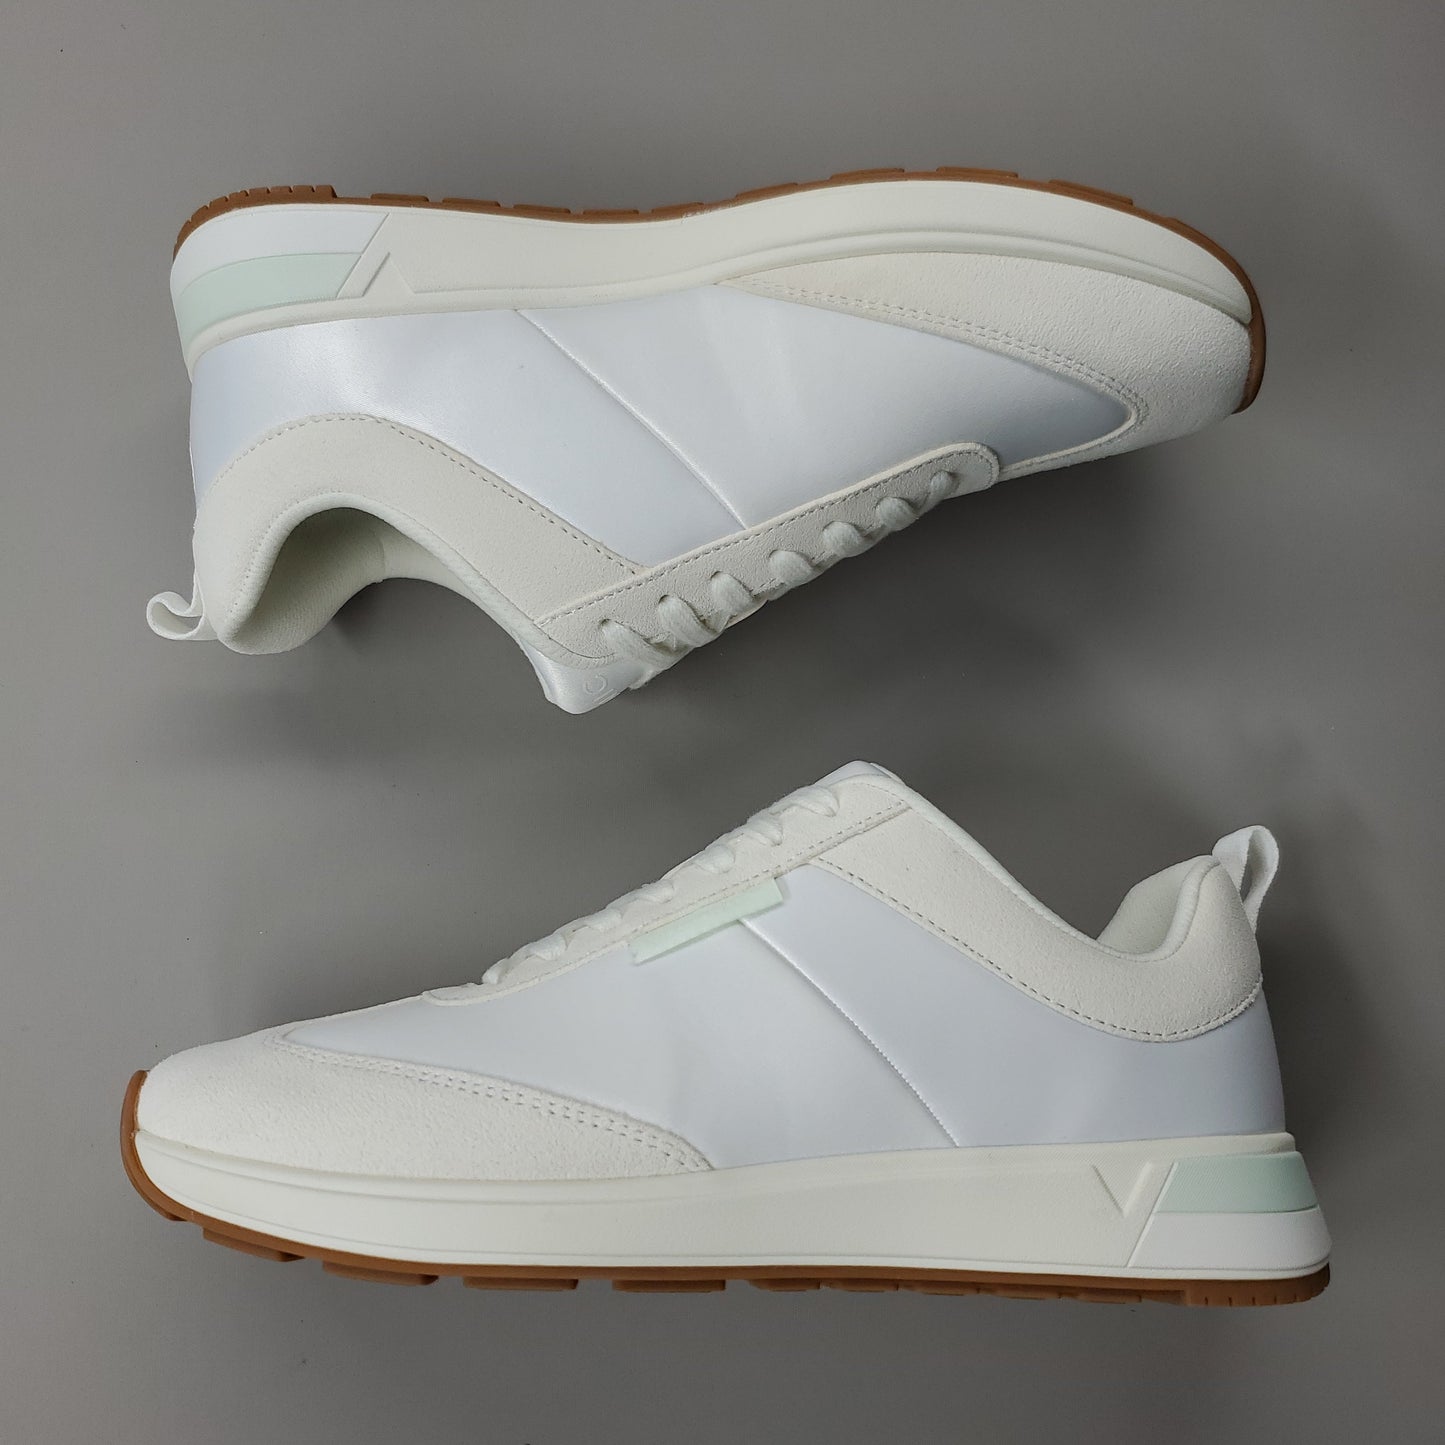 VIONIC Breilyn Satin Sneaker Shoe Women's Sz 6 M Beige/White (New)